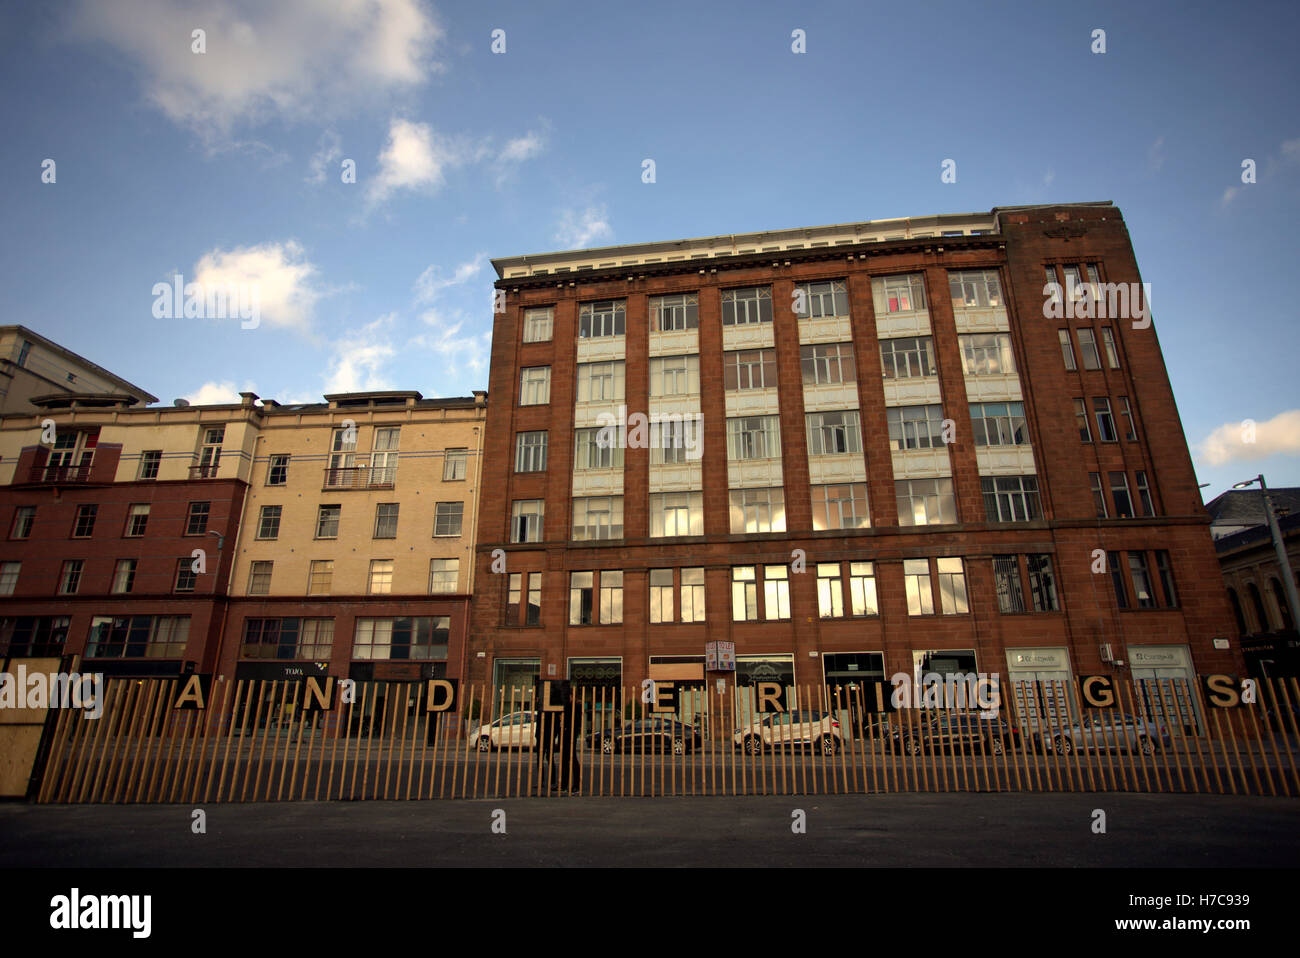 Área Candlerggs merchant city escenas callejeras con edificios que muestran signos de renovación Foto de stock